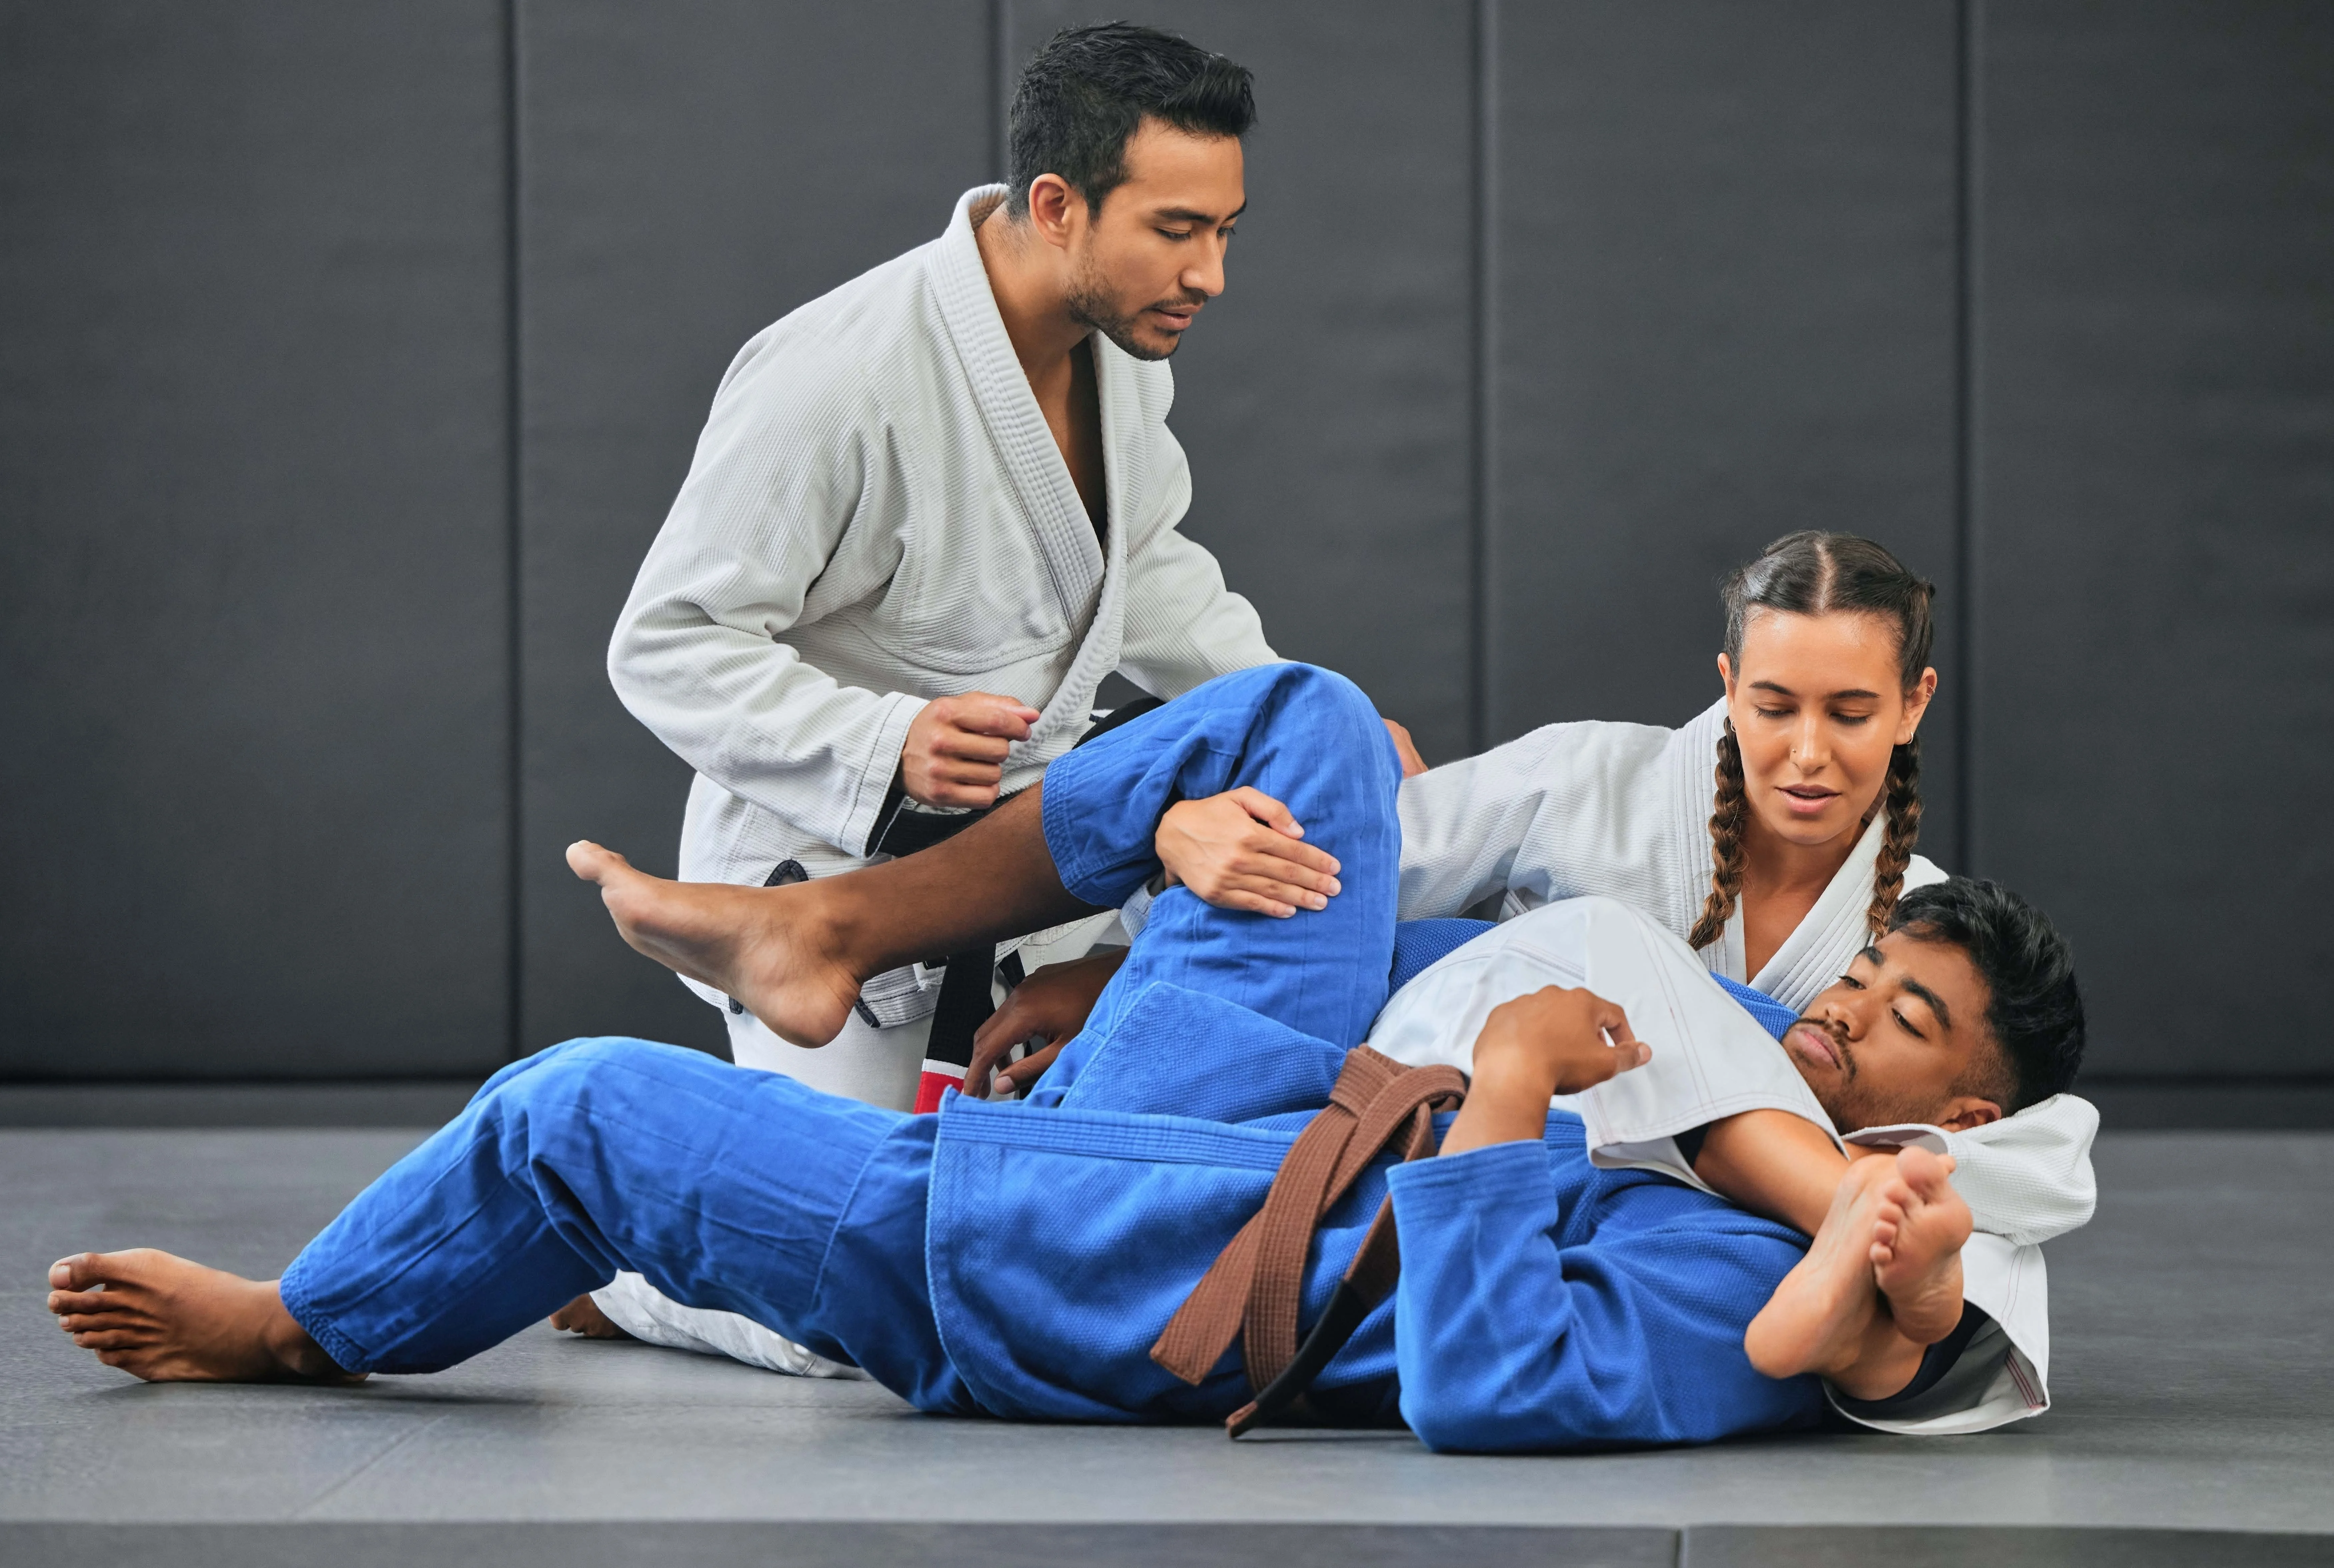 Beginners Guide to Brazilian Jiu Jitsu